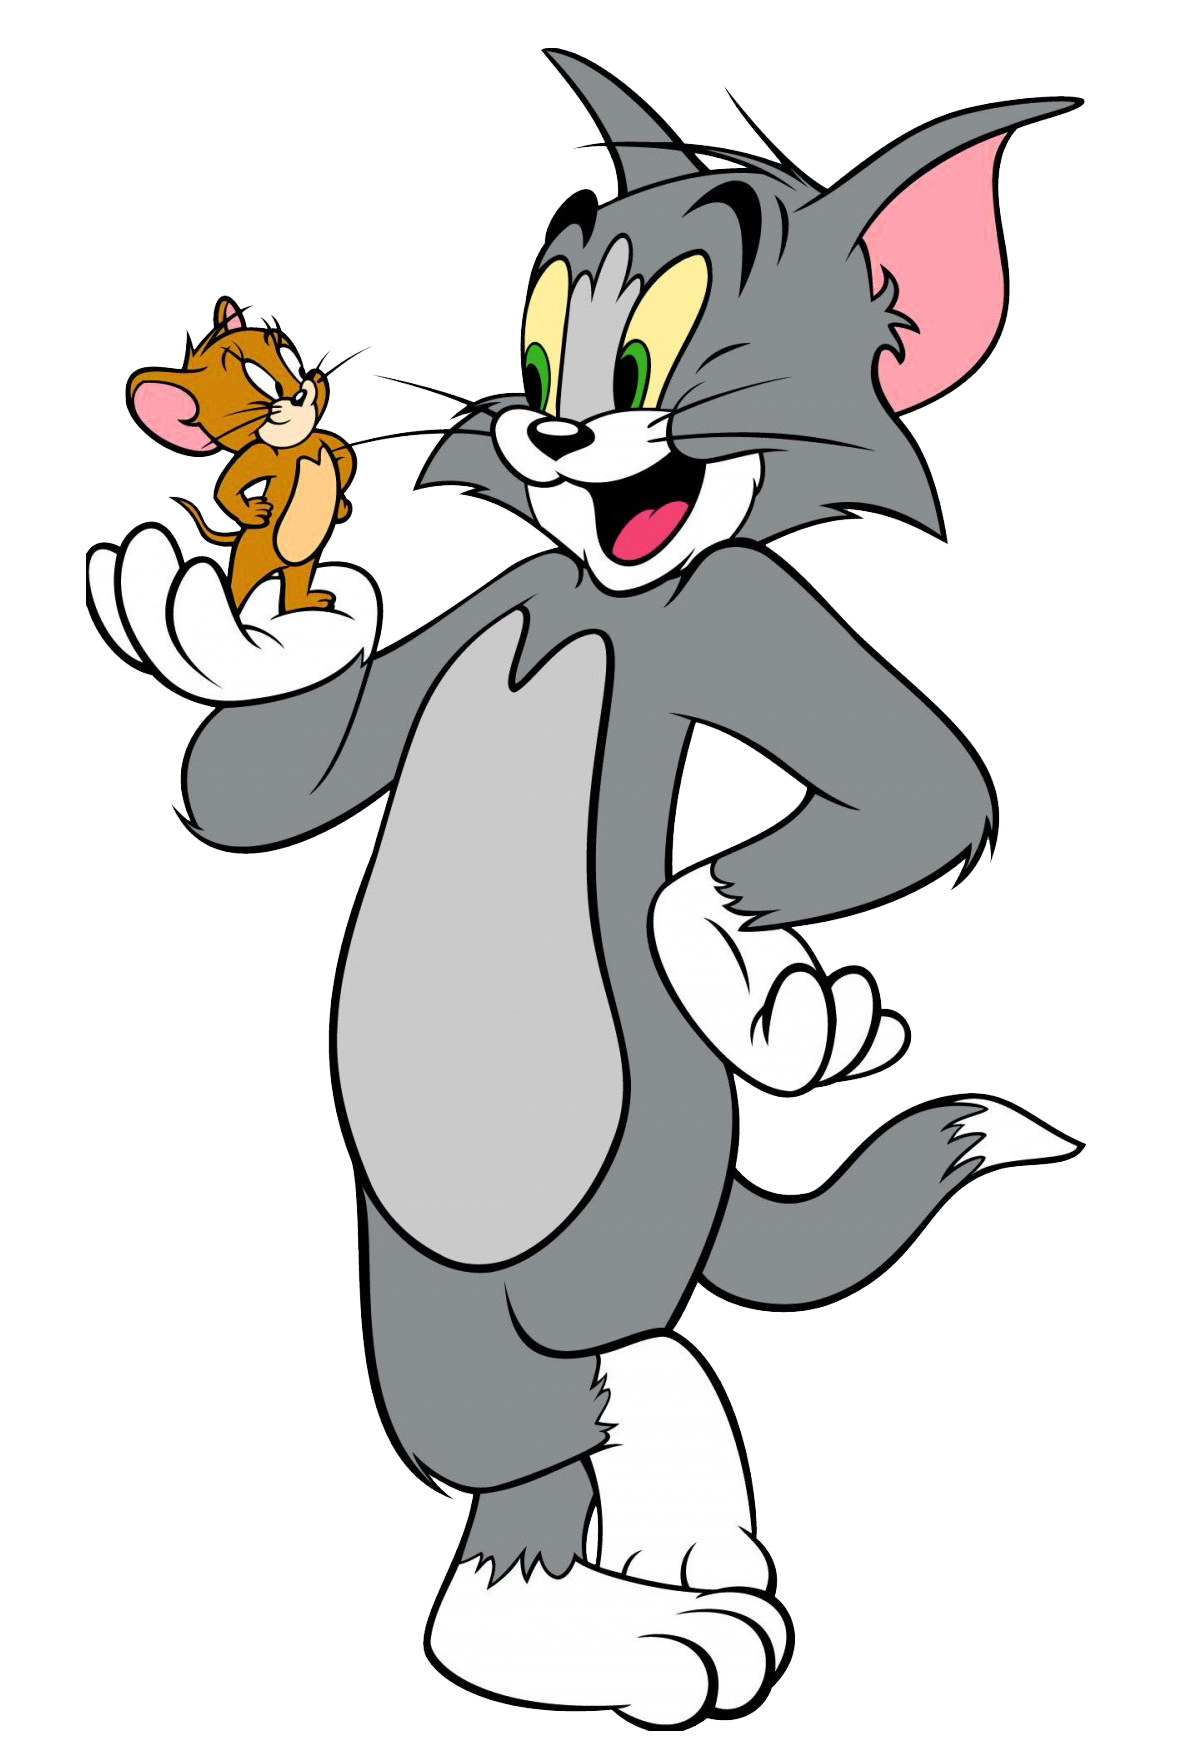 دانلود انیمیشن های تام و جری Tom And Jerry + مجموعه کامل